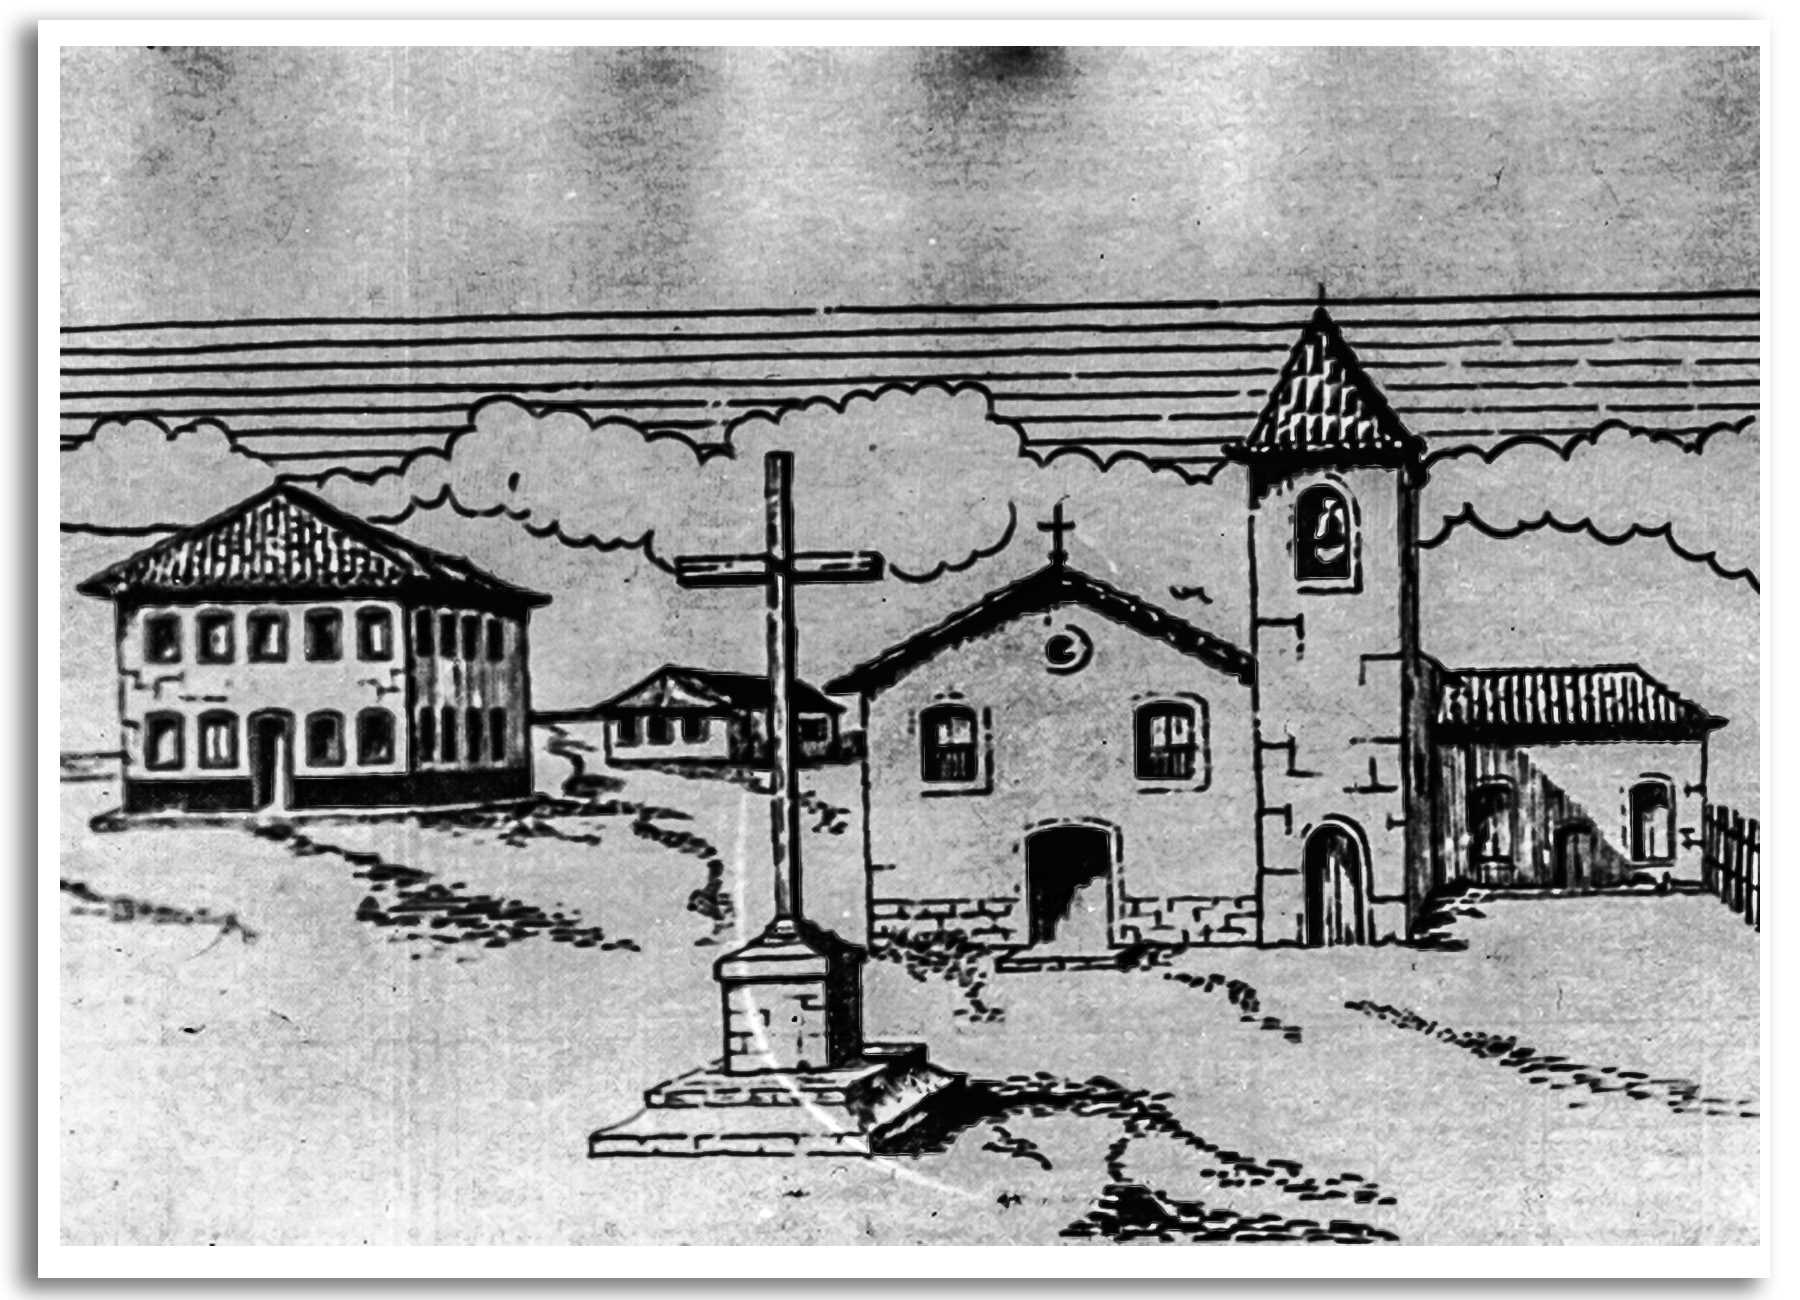 Vila de Taubaté: Casa da Câmara e Matriz de São Francisco das Chagas (concepção de José Ernani Pereira)